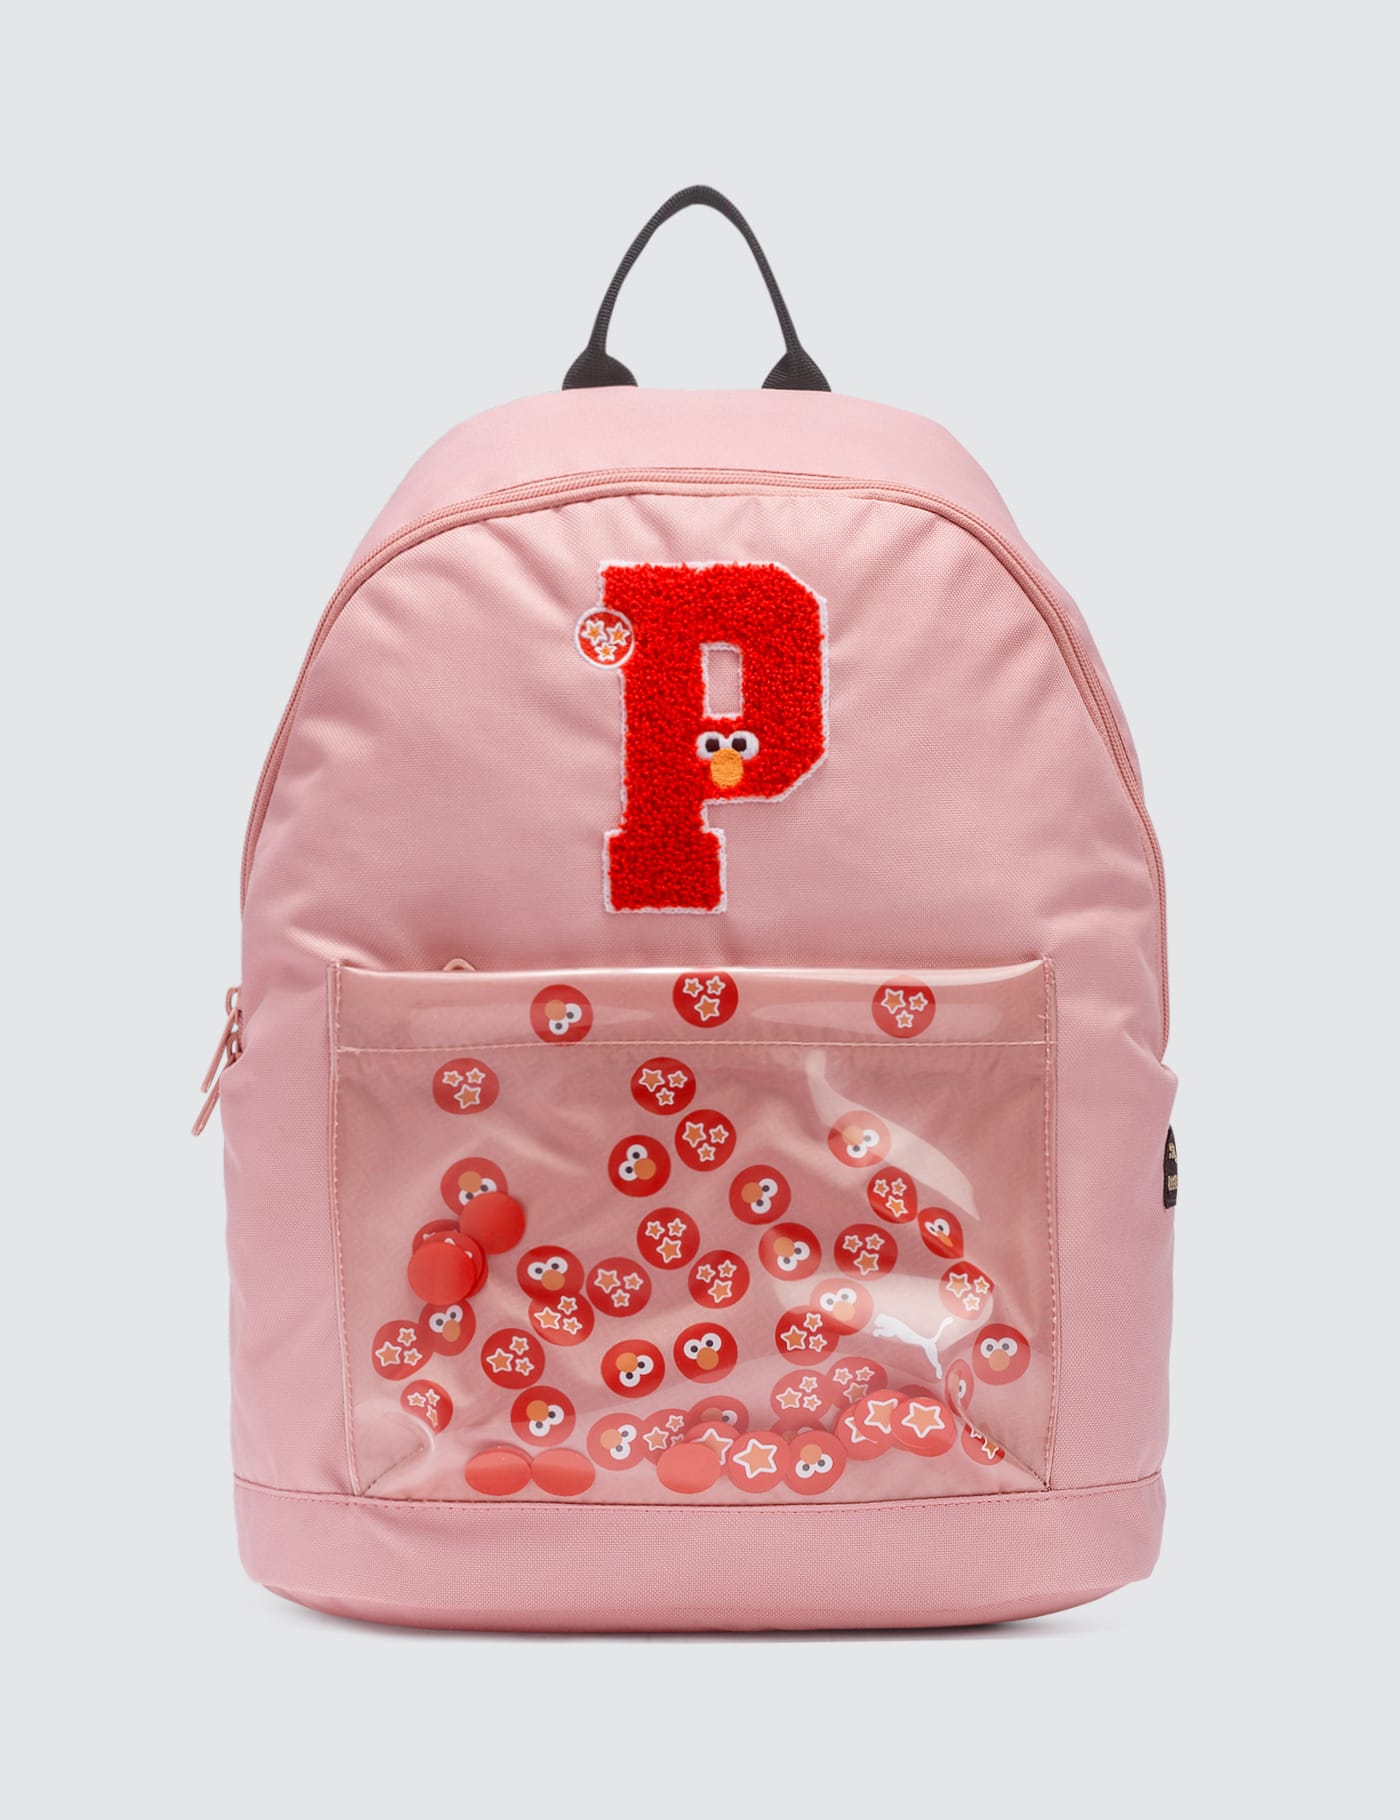 puma x sesame street backpack